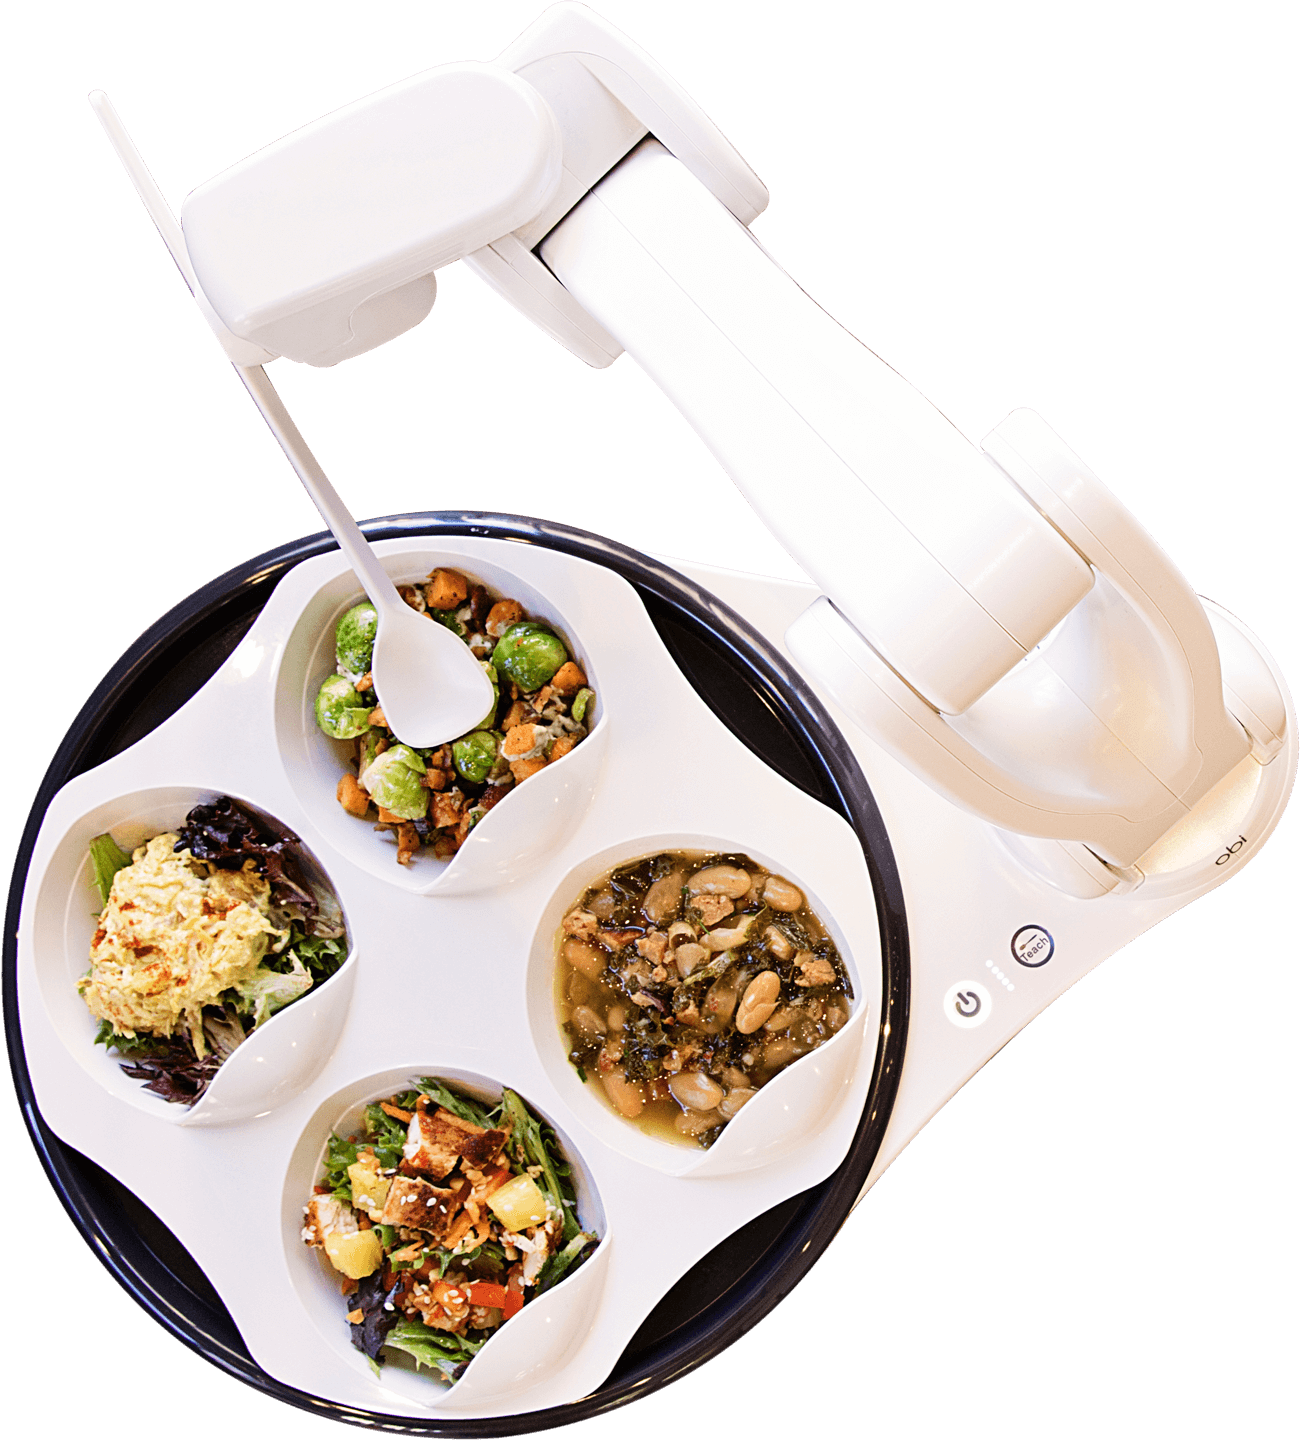 OBI Esshilfe Roboter- übernehmen Sie die Kontrolle beim essen- mobiler Essroboter-Arm komplett mit Schalen- inkl- Akku- für zu Hause oder im Restaurant